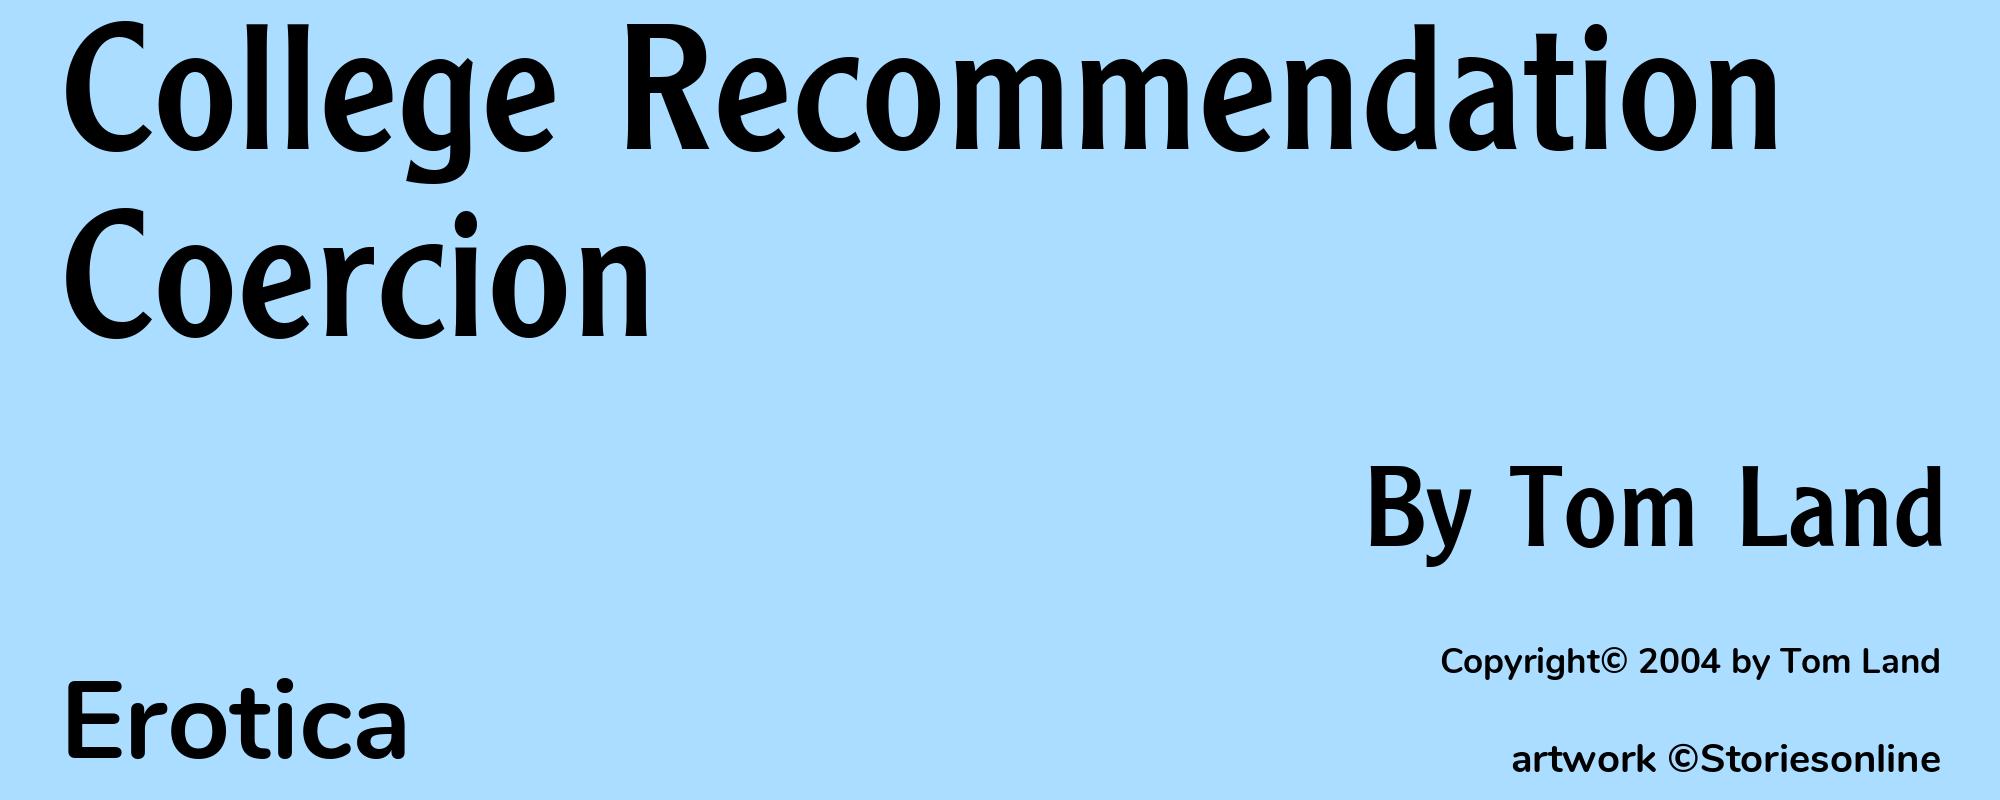 College Recommendation Coercion - Cover